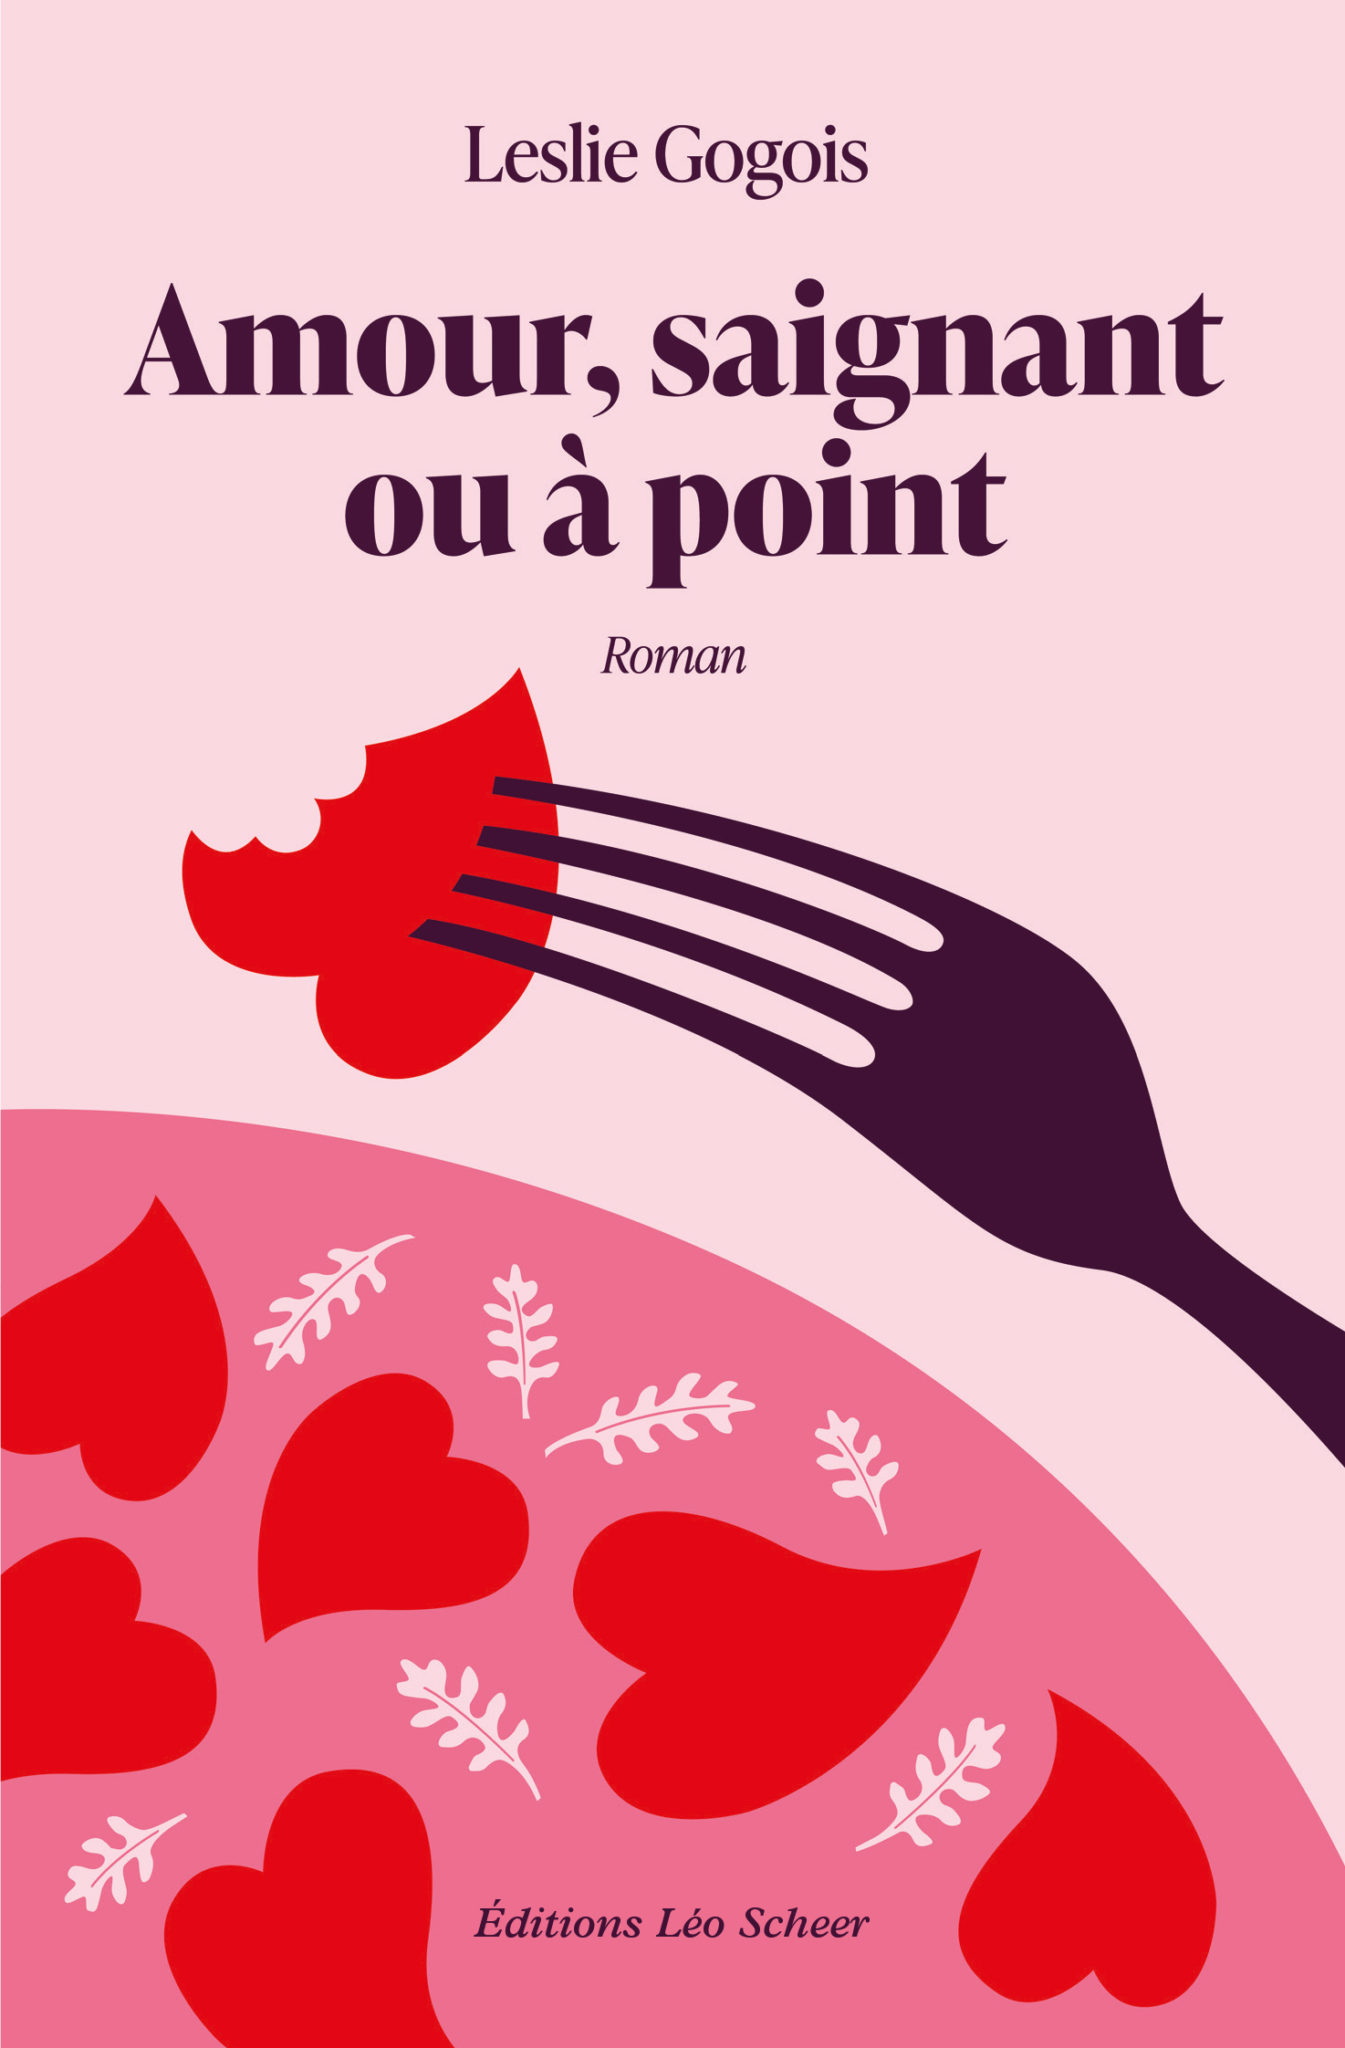 La couverture illustrée du roman Amour saignant ou à point, de Leslie Gogois, illustrée par Marine Dion, brand designer Food